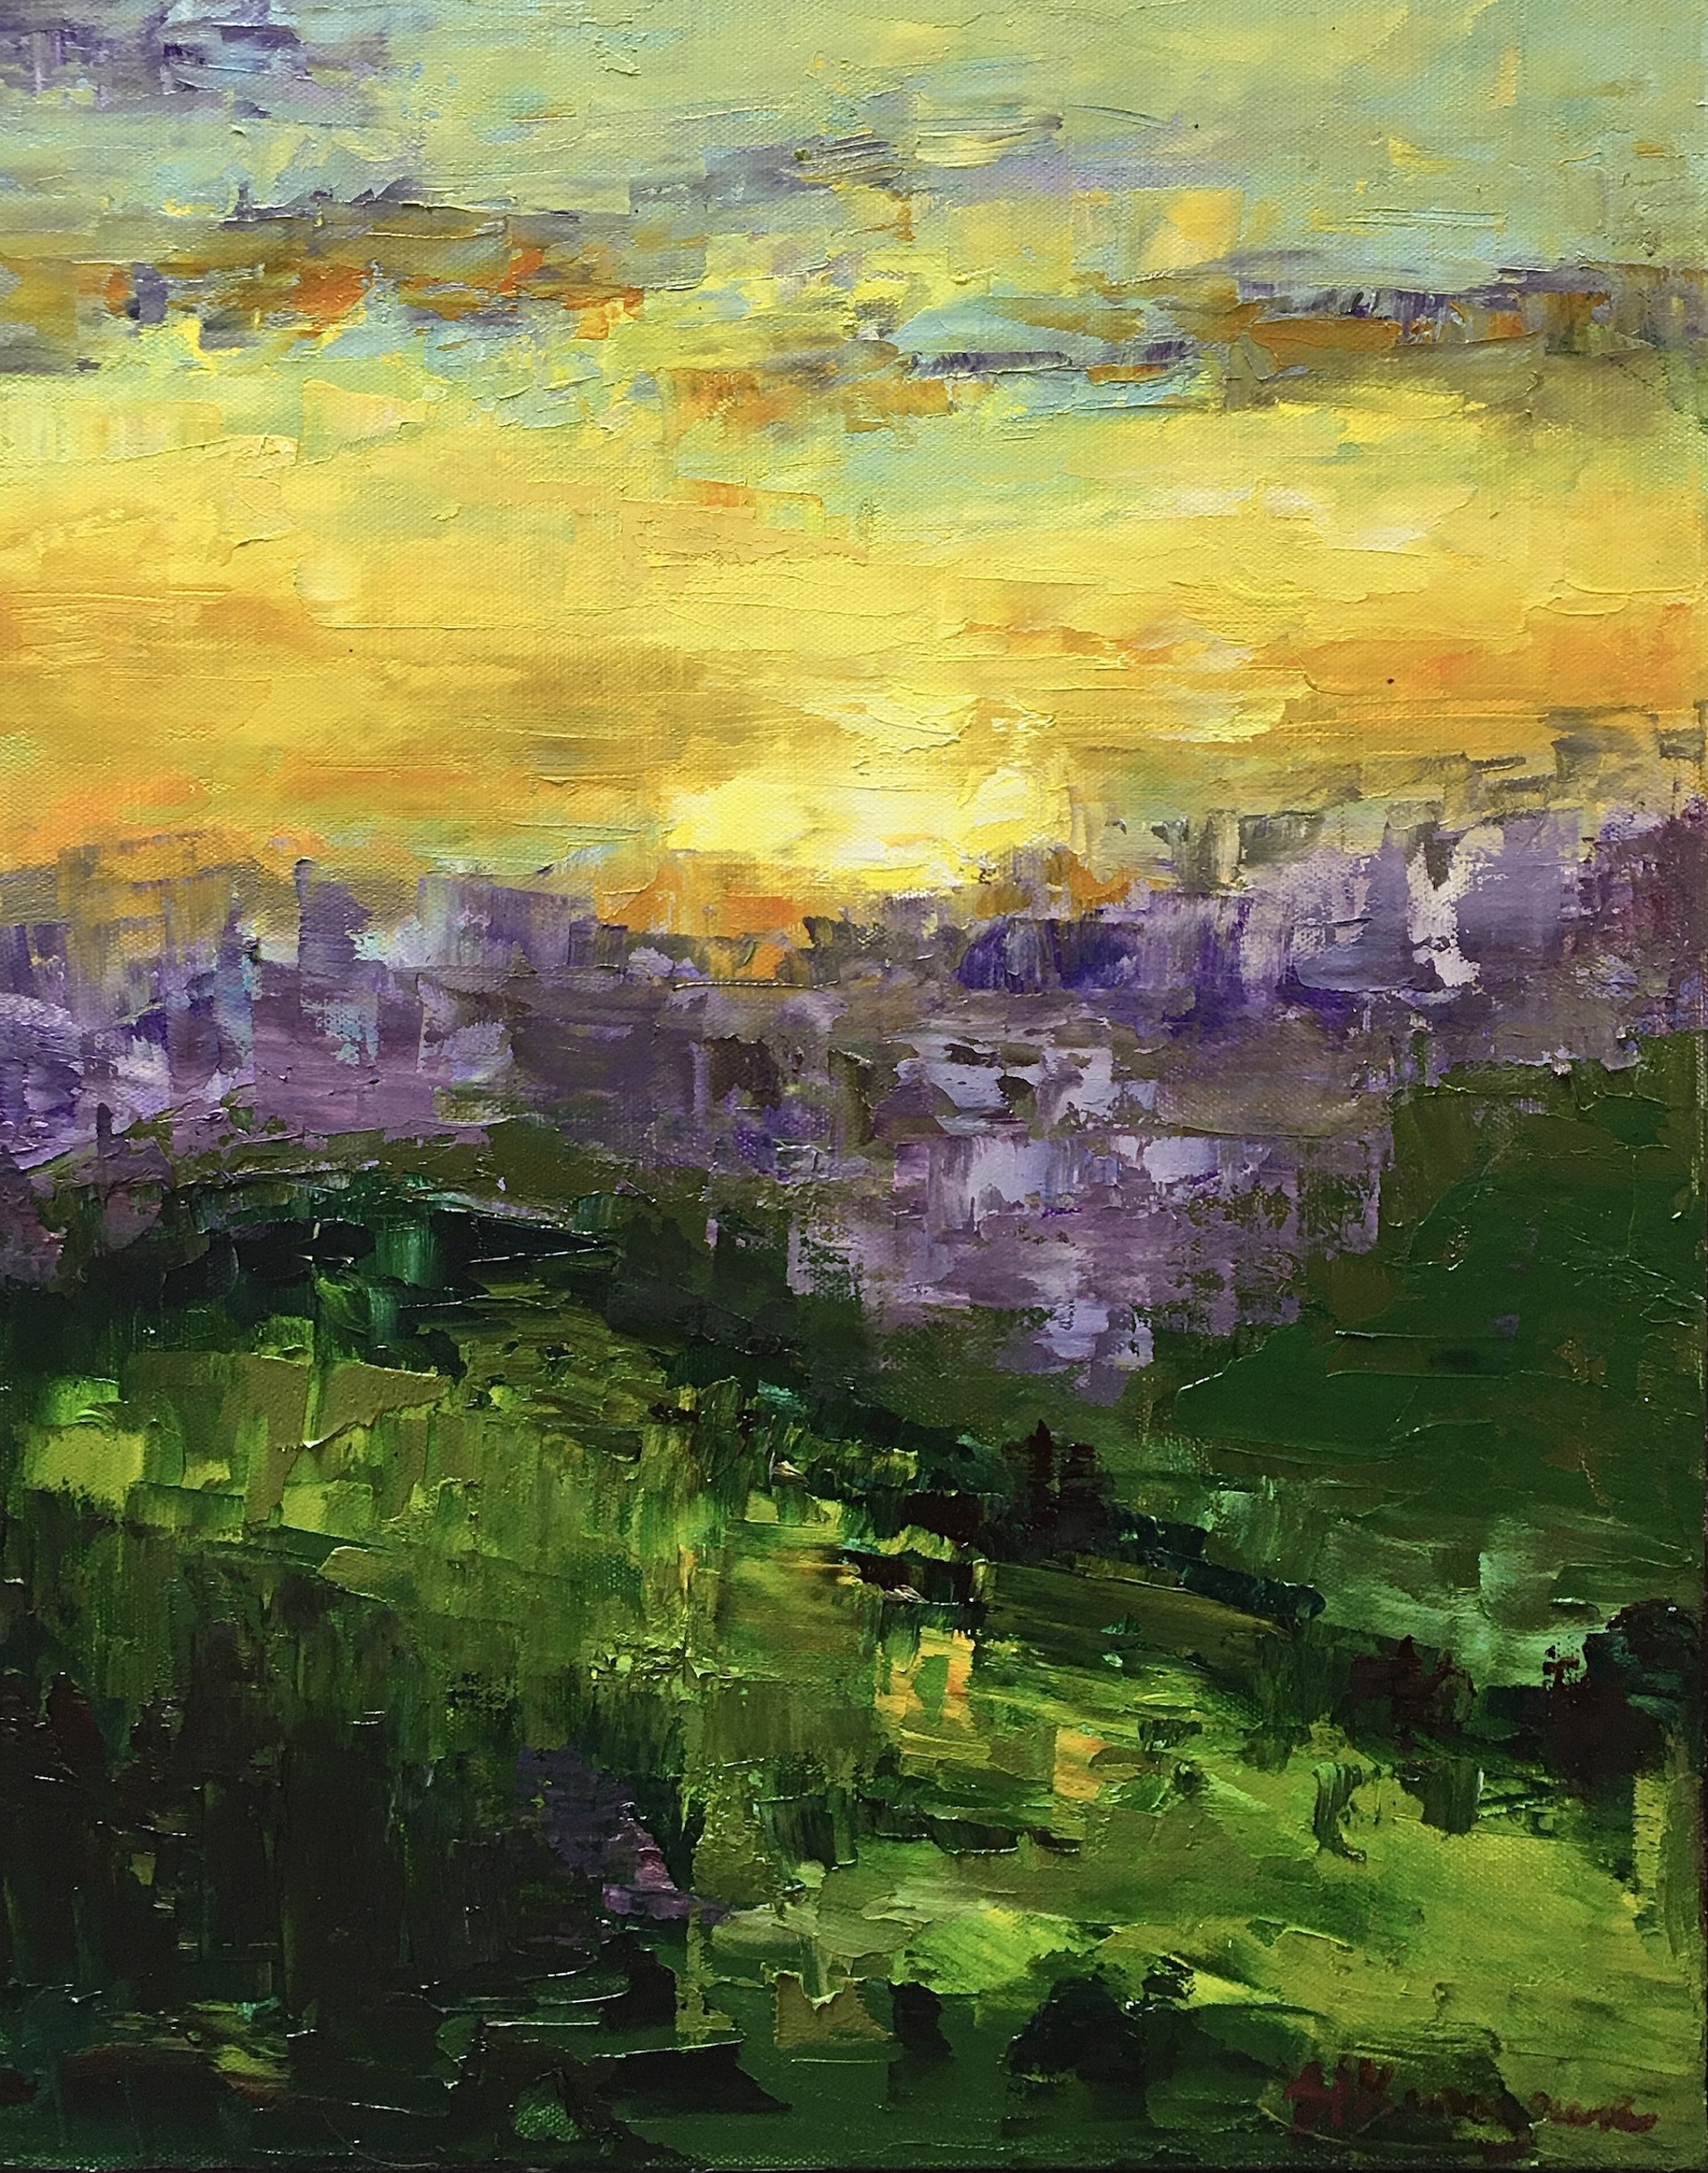 Sunset with Purple Trees by Heather Kanazawa